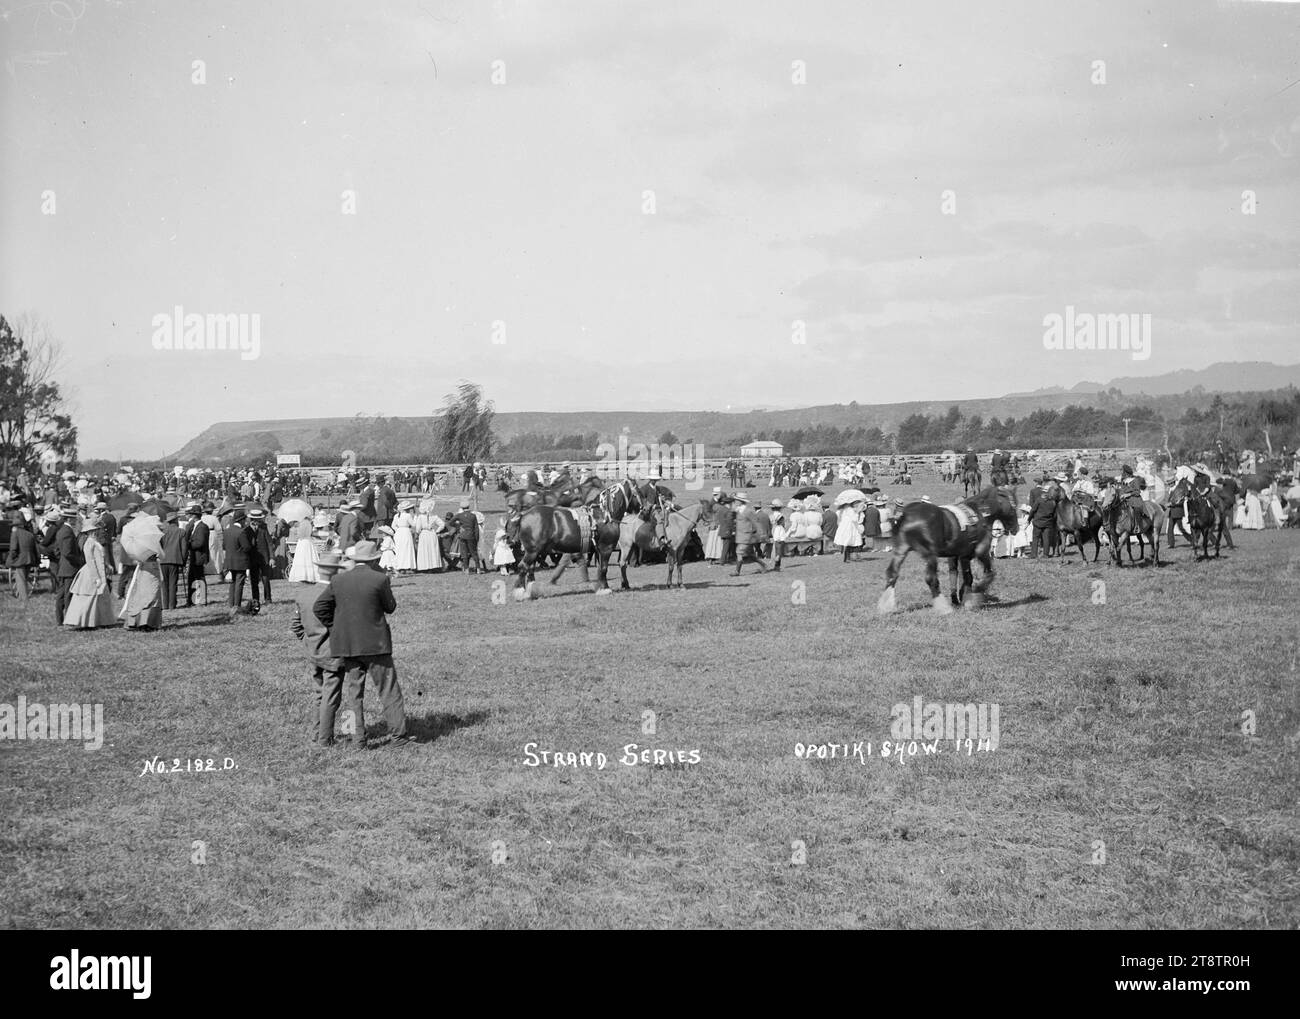 Veduta dello spettacolo Opotiki A & P, 1911, veduta dello spettacolo agricolo e pastorale a Opotiki nel 1911. C'è una grande folla a sinistra, con cavalli da tiro in primo piano e cavalli da cavallo a destra. Molte donne nel pubblico portano degli ombrelli Foto Stock